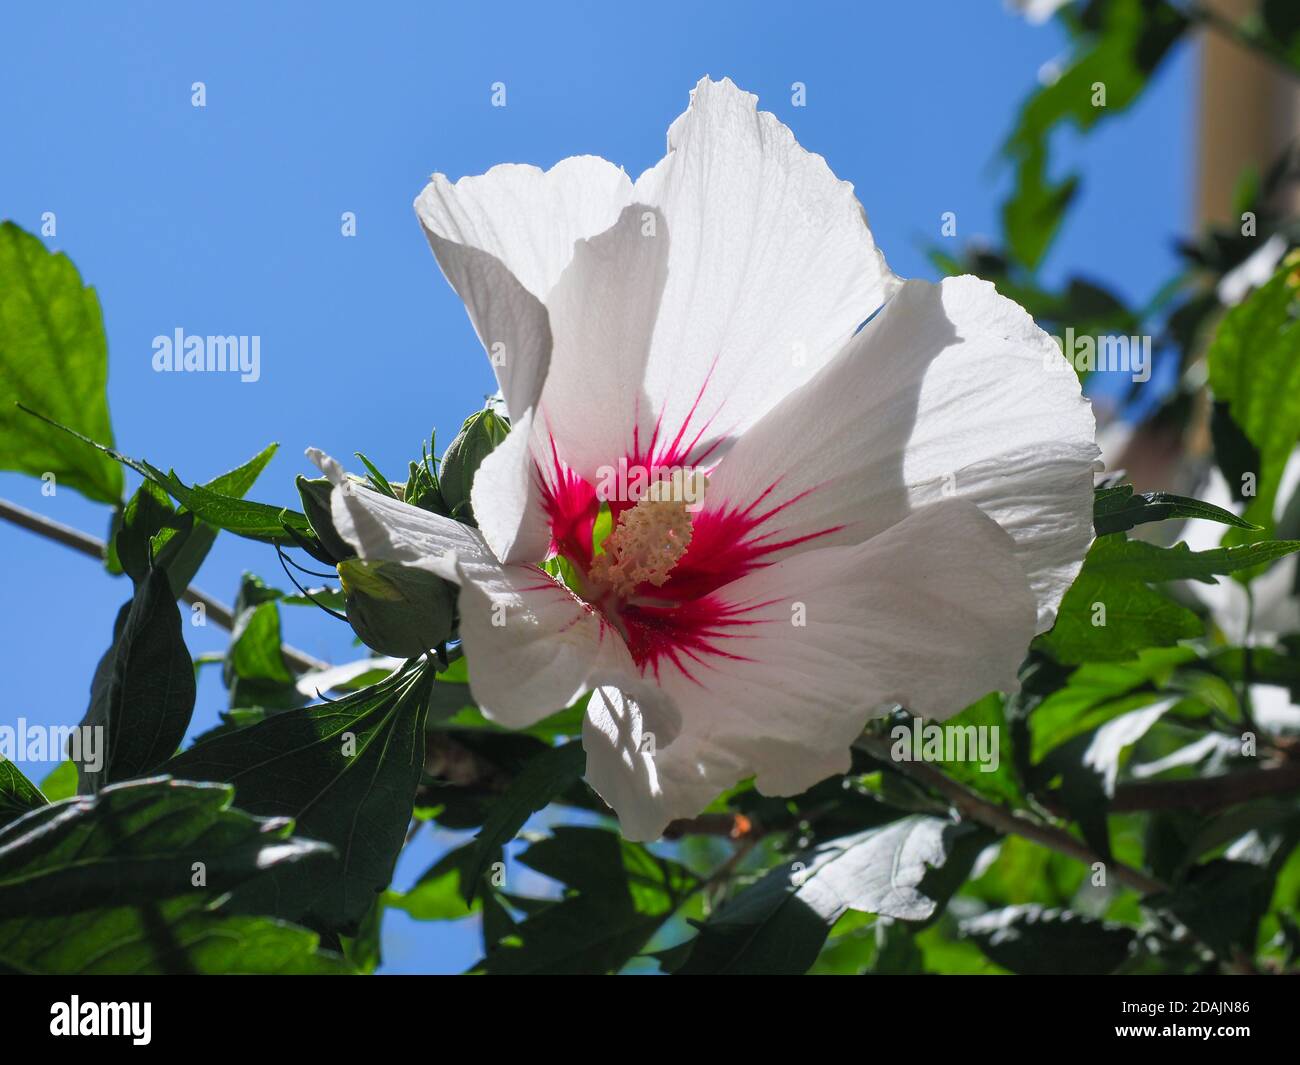 Hibiscus cinese o fiore di mallow di rosa. Hibiscus Rosa Sinensis fiorisce con petali bianchi cremosi e centro di borgogna. Fiori di rosa hawaiani o cinesi. Foto Stock